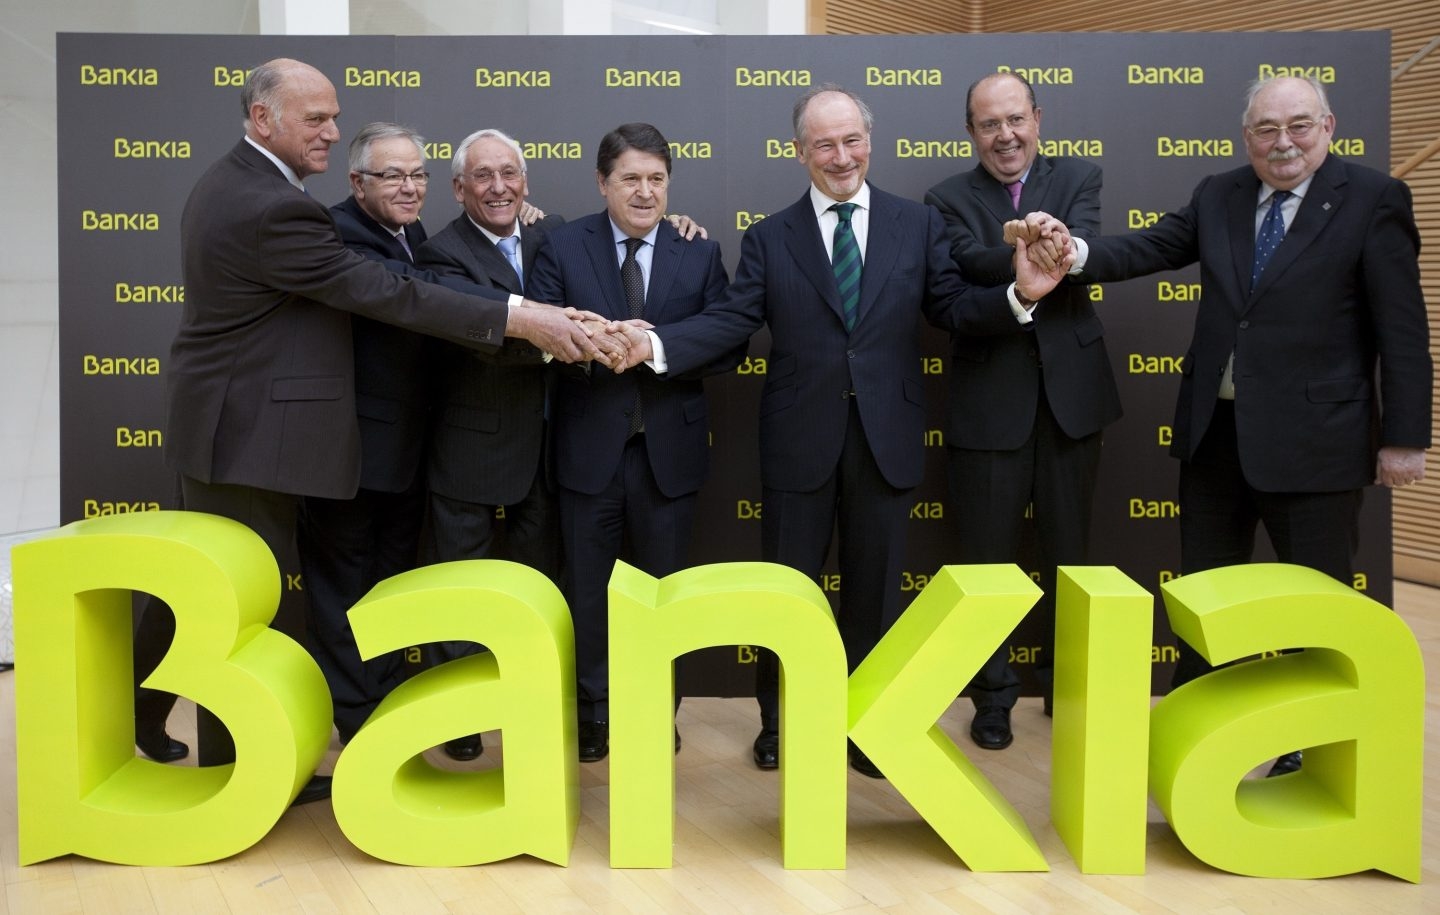 Foto de familia de la creación de Bankia, liderada por Rodrigo Rato y José Luis Olivas.